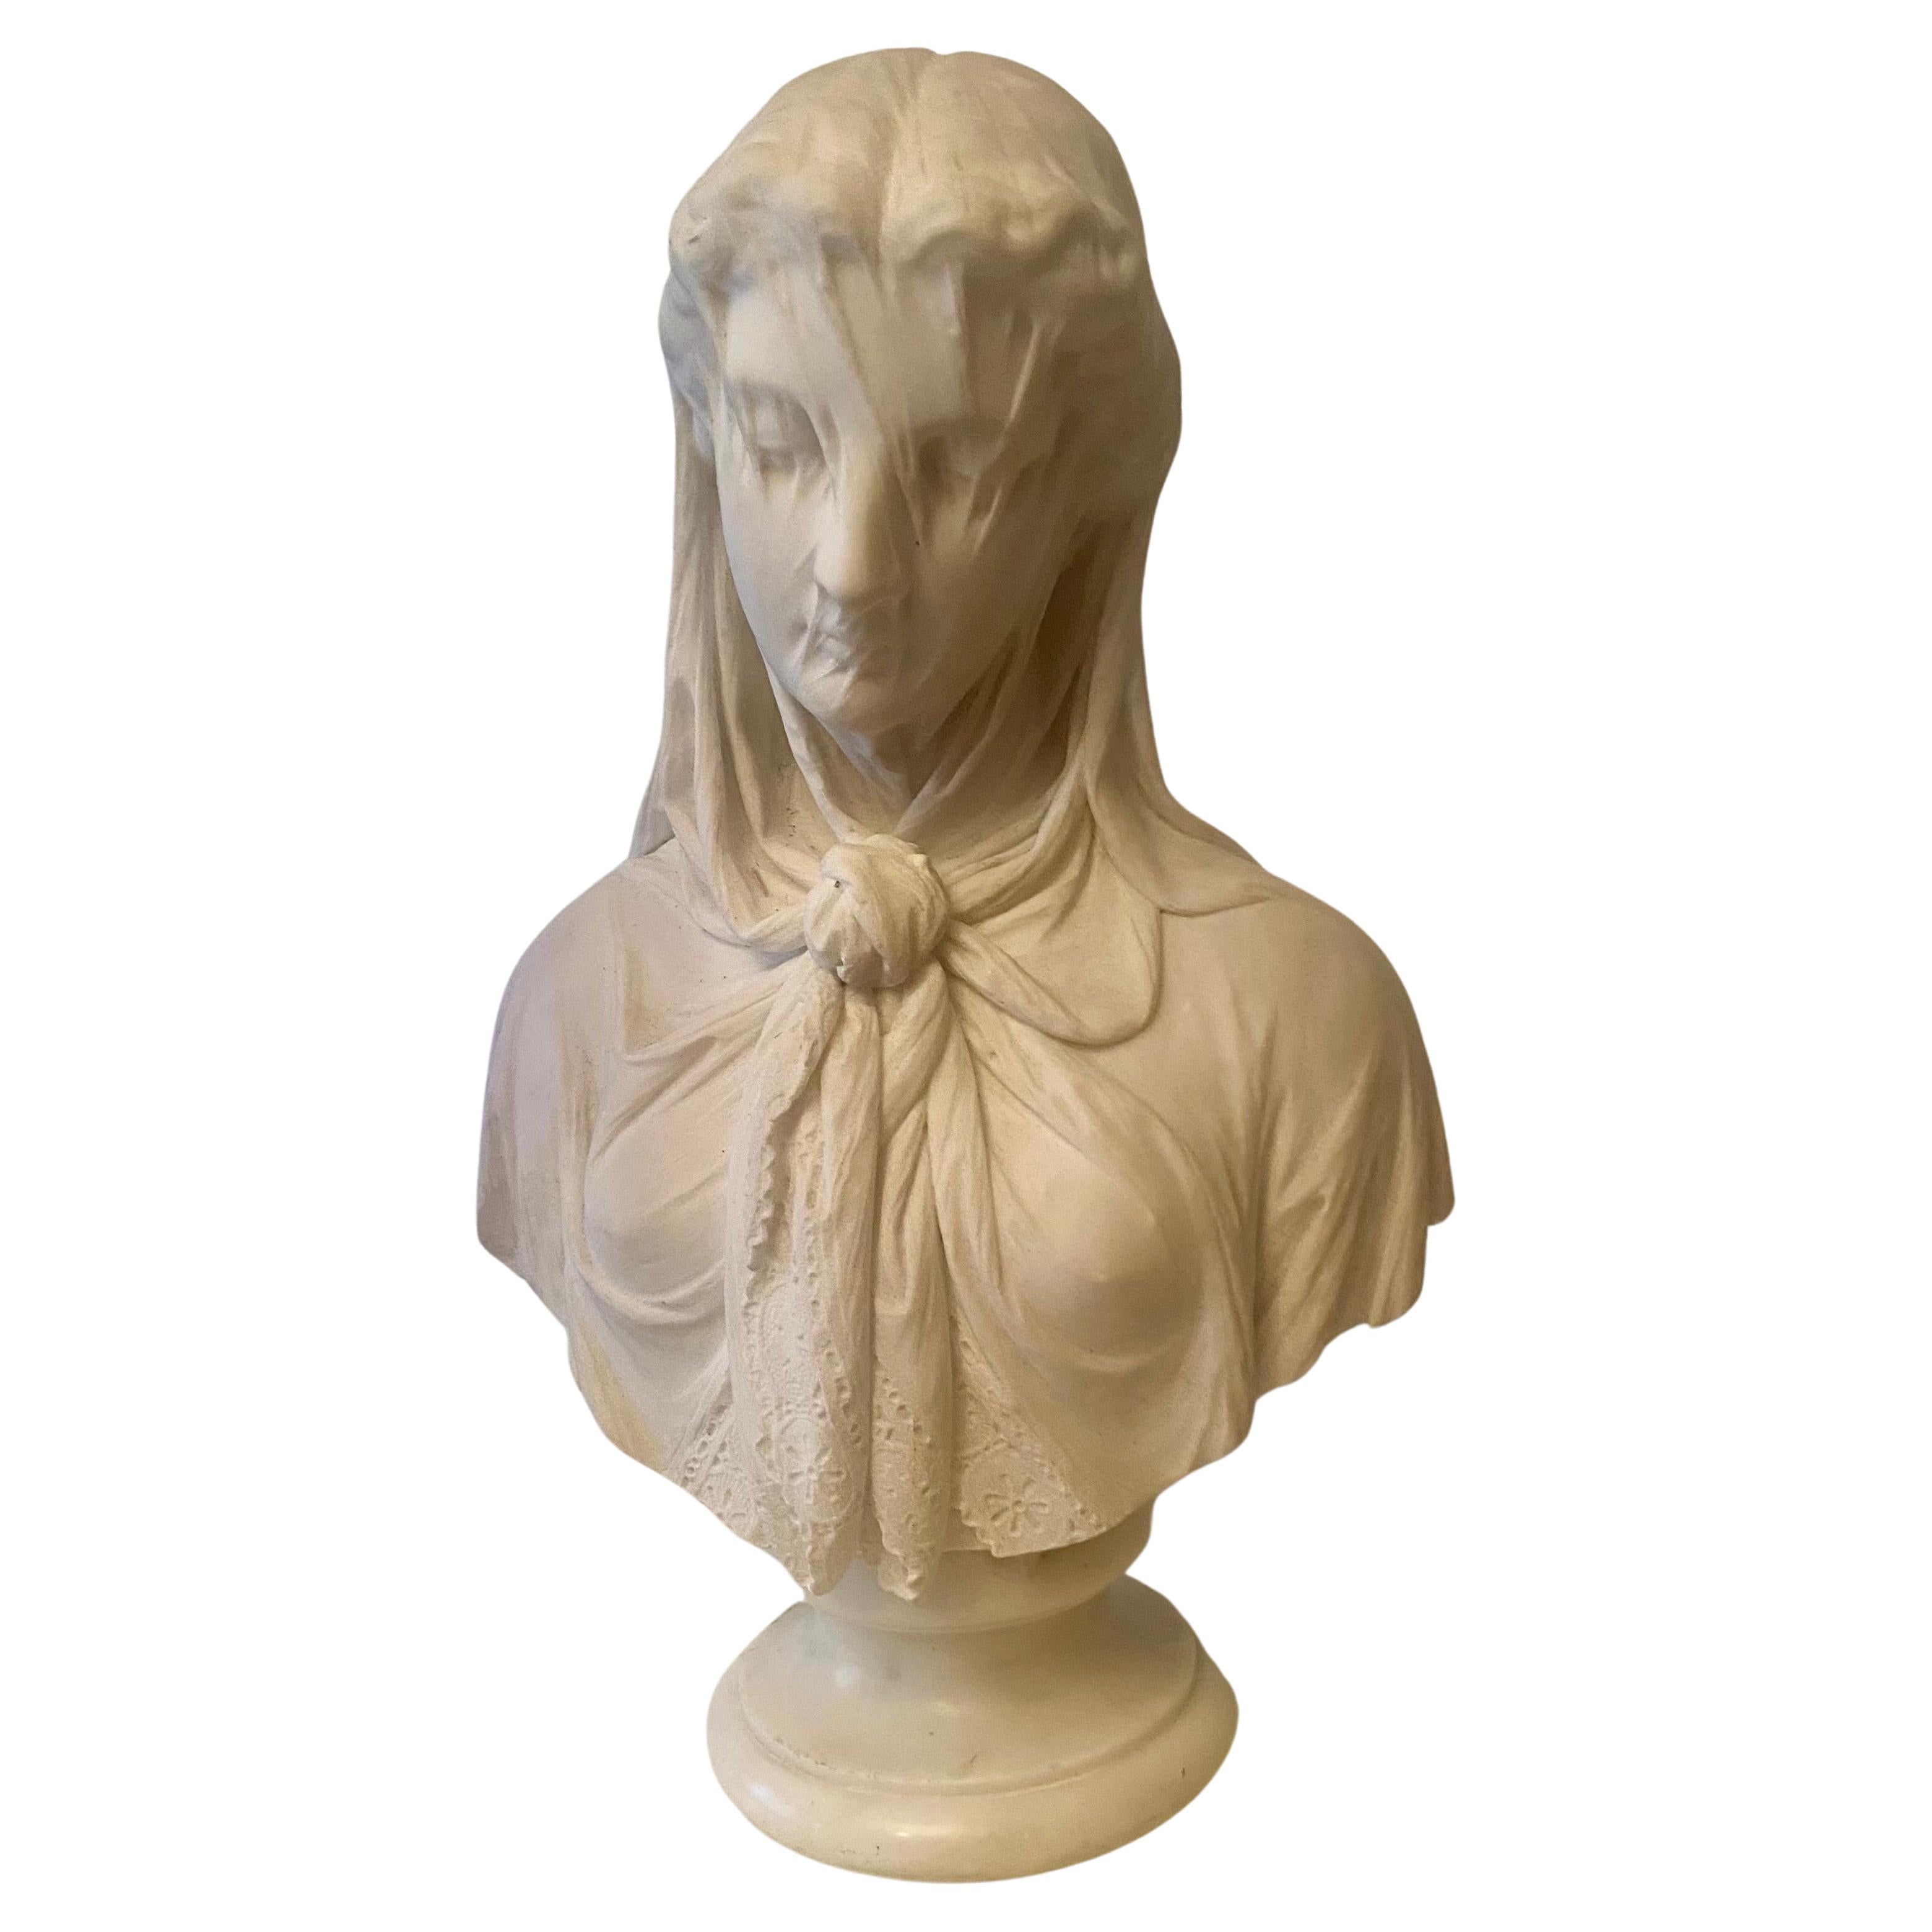 Il s'agit d'un buste en marbre massif de haute qualité, unique en son genre, particulièrement bien composé et délicatement sculpté. Bien qu'elle ne porte pas de couronne de fleurs, cette jeune femme, avec l'inclinaison modeste de sa tête et le voile